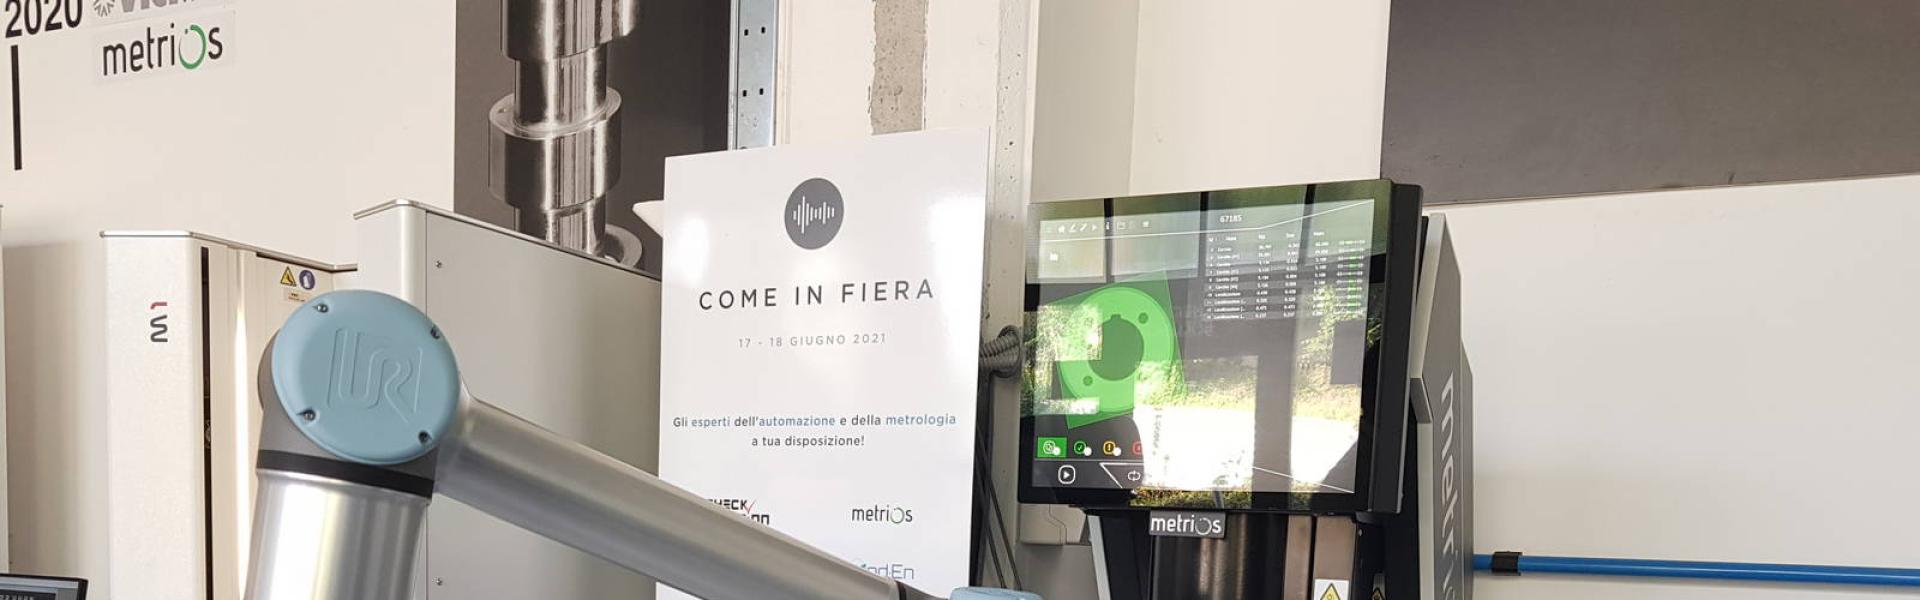 开放式住宅COME IN FIERA 2021 - 都灵, 意大利